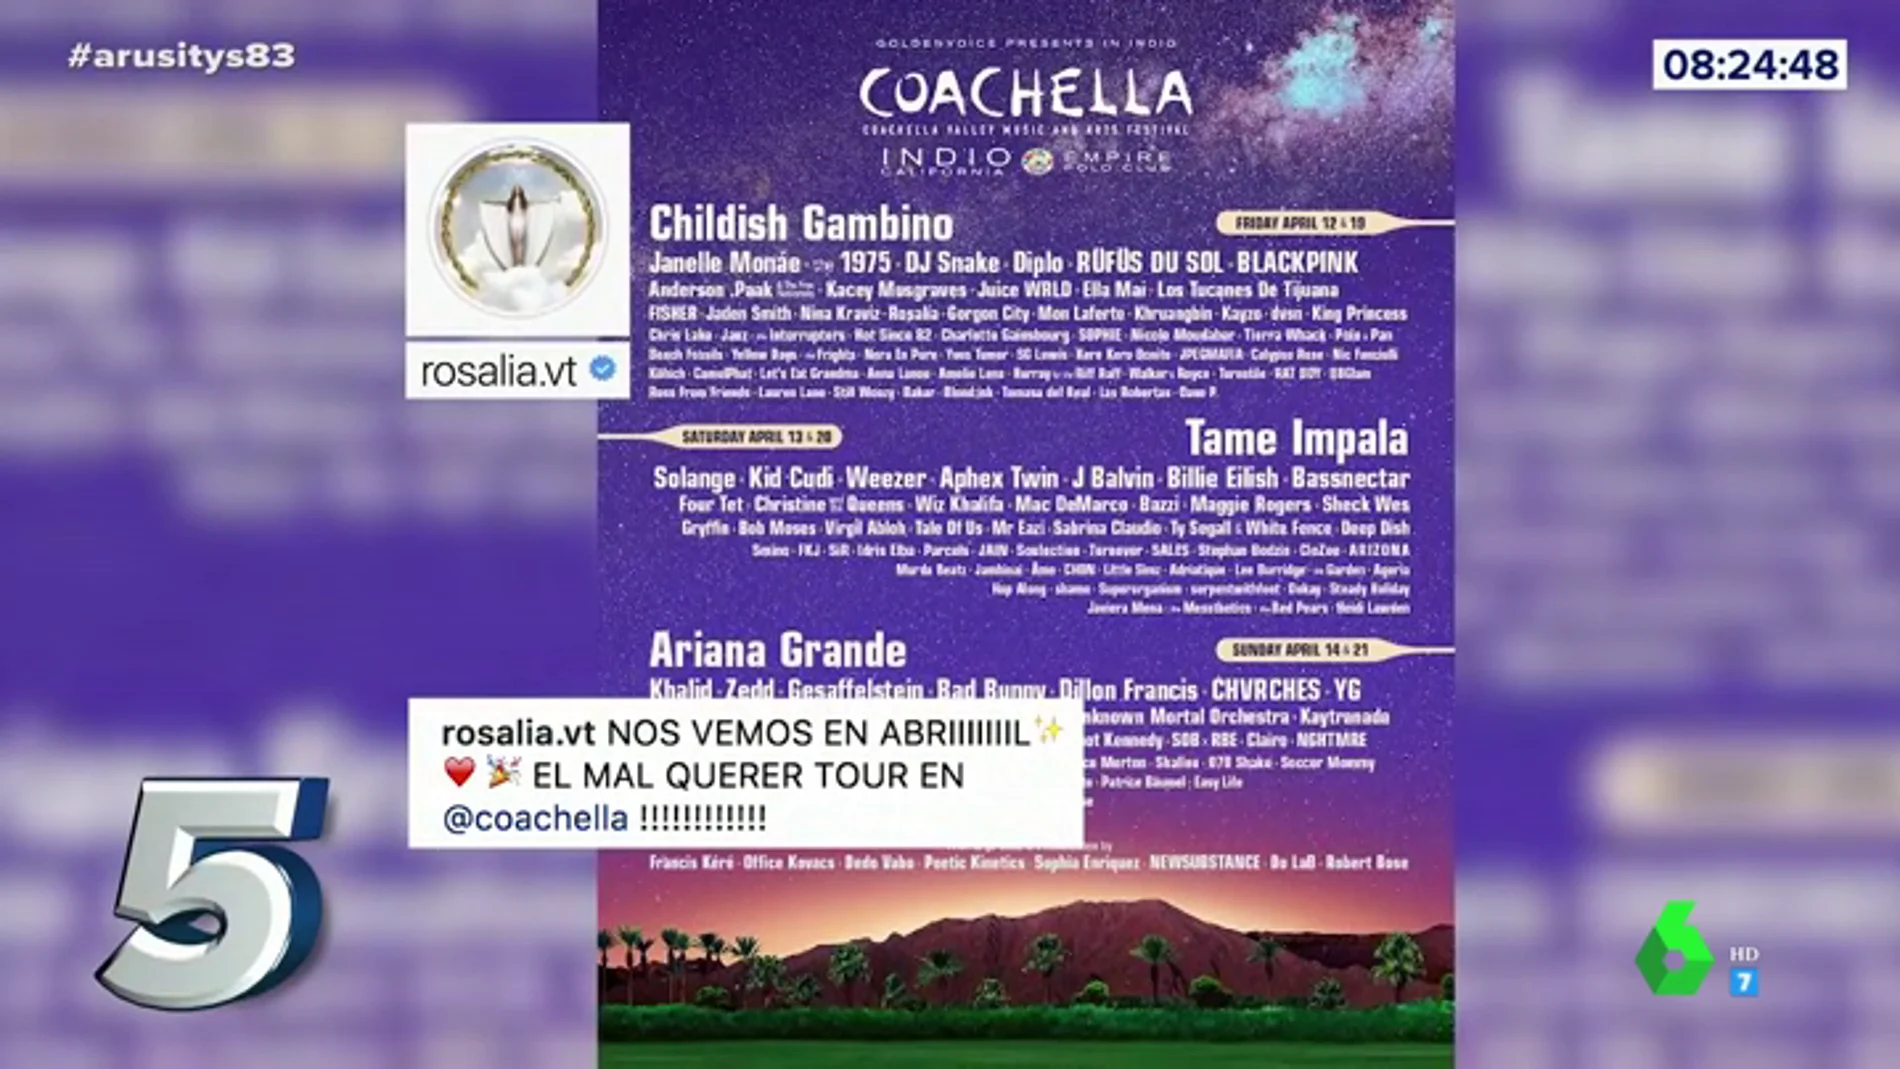 Rosalía publica el cartel de Coachella en su Instagram